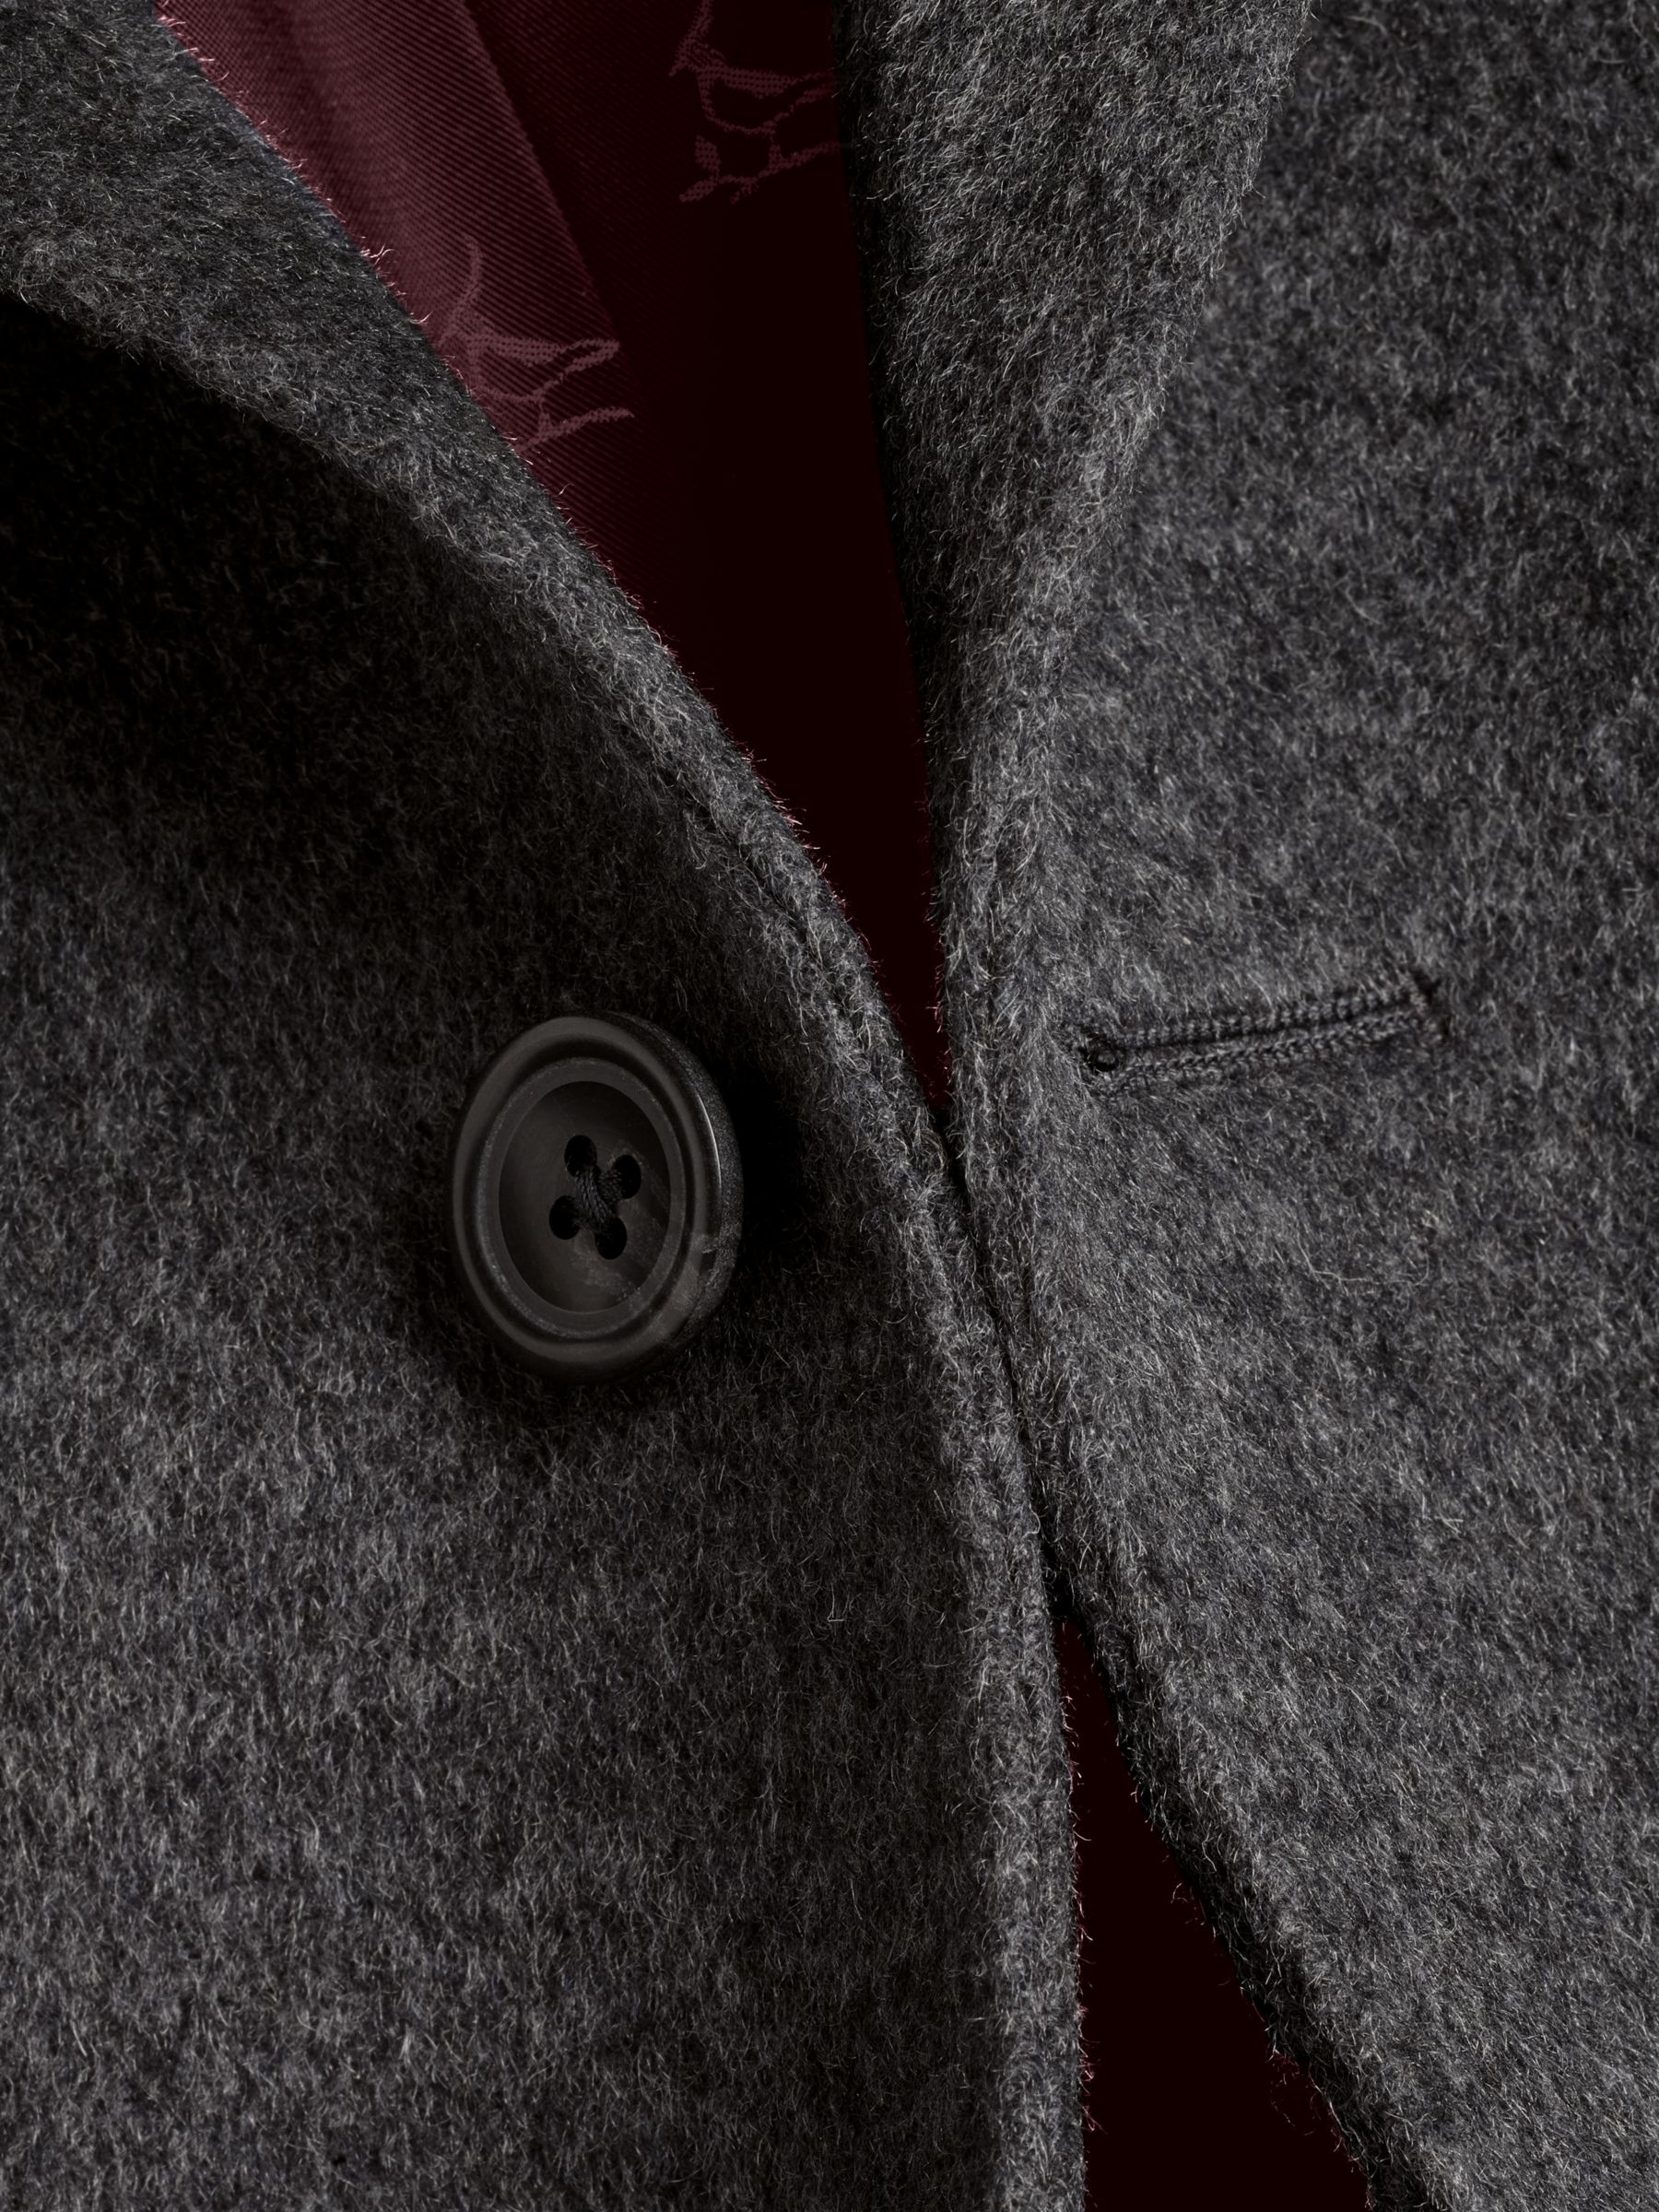 Charles Tyrwhitt Merino Wool Overcoat, Dark Grey, 36R